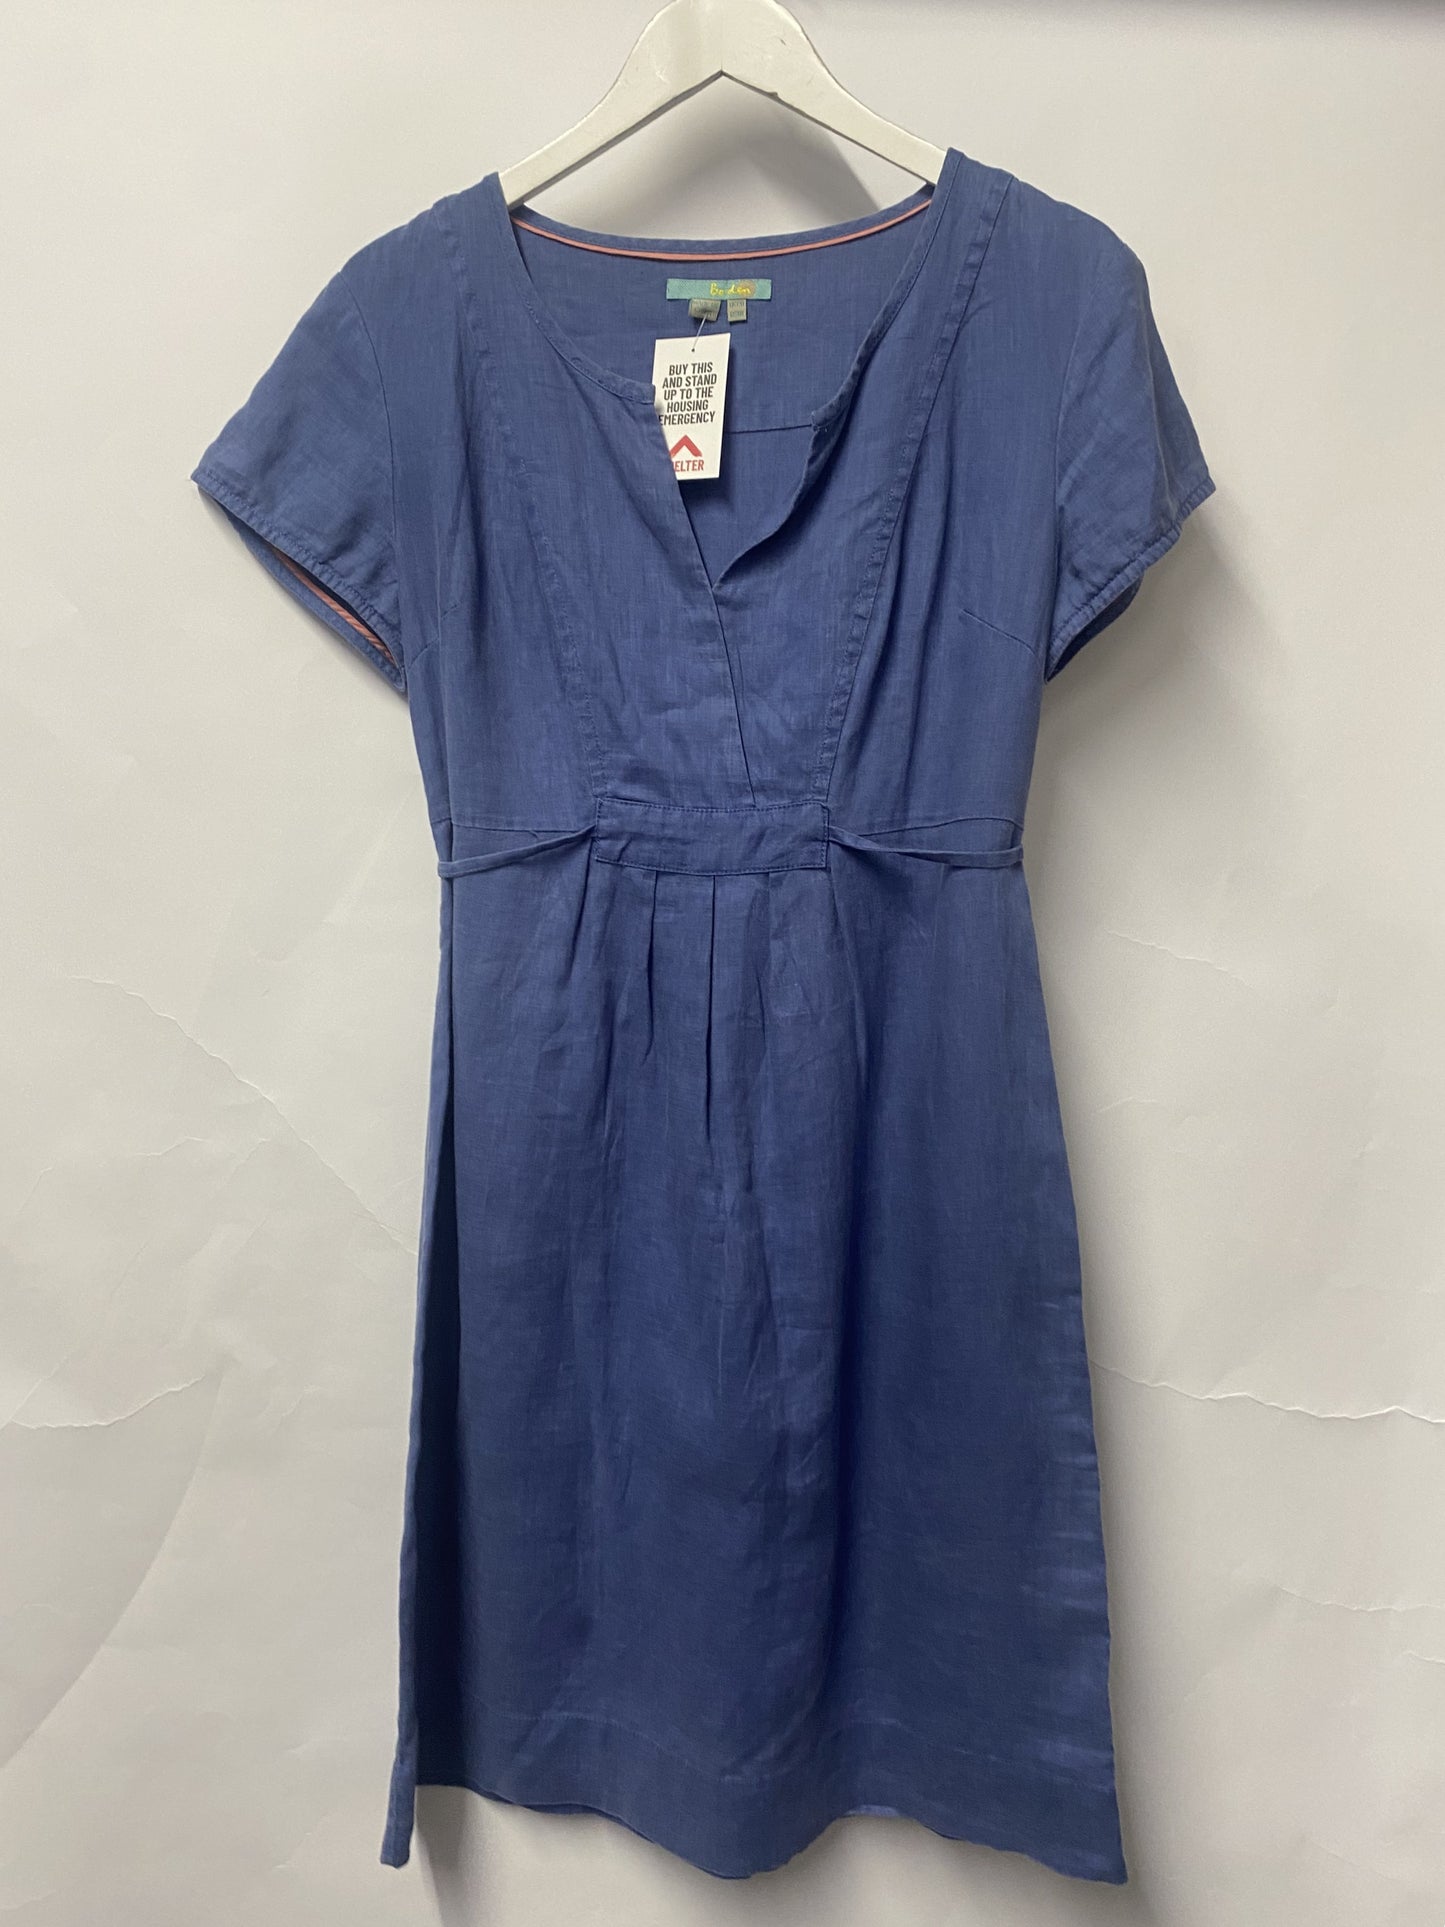 Boden Blue 100% Linen Summer Dress 12R